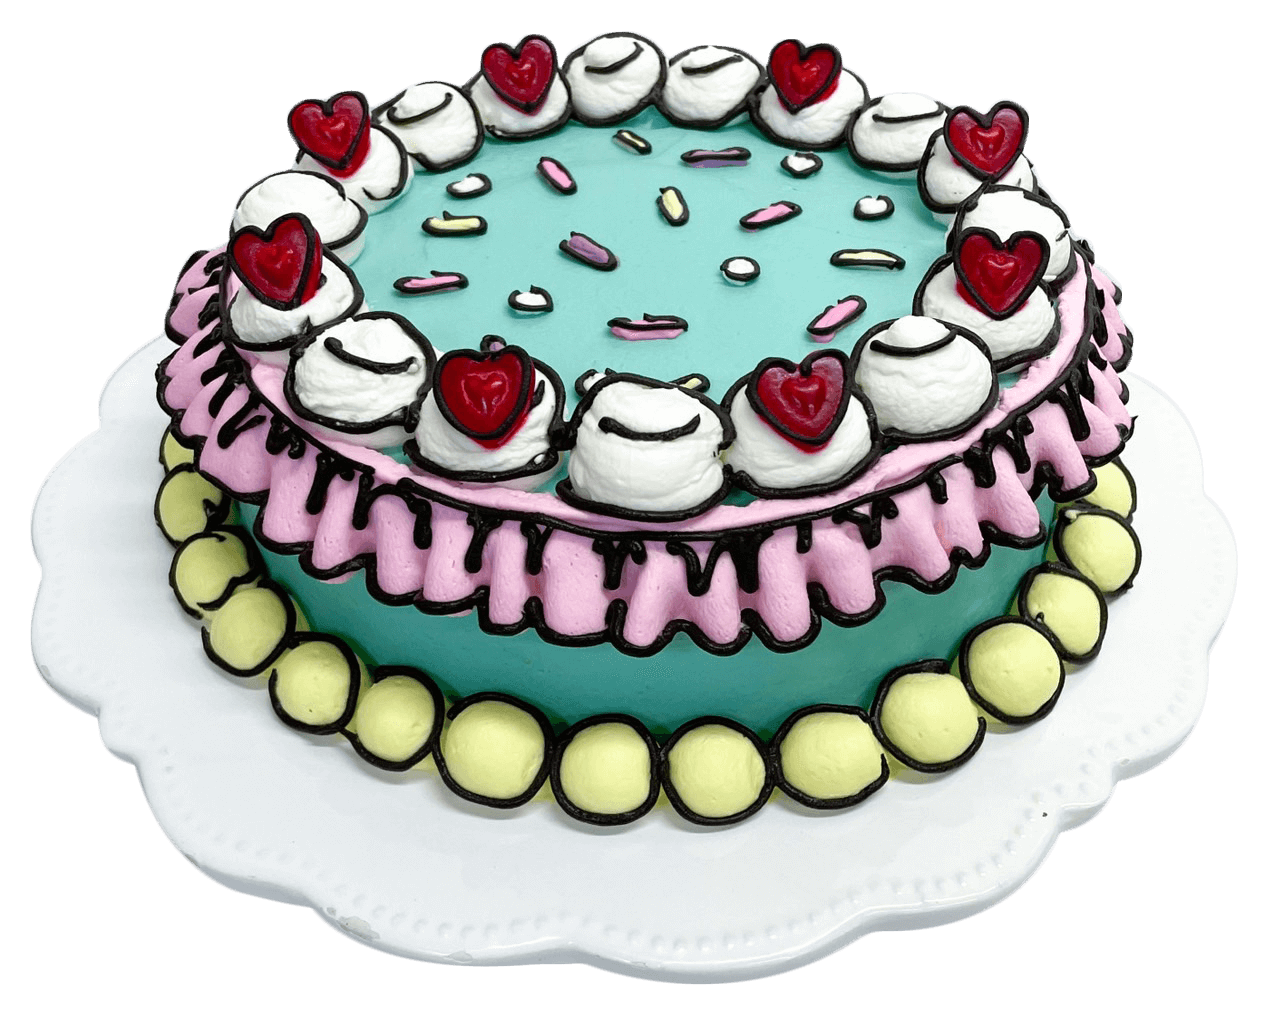 Shonpy Cake(しょんぴぃケーキ)の『2Dケーキ』